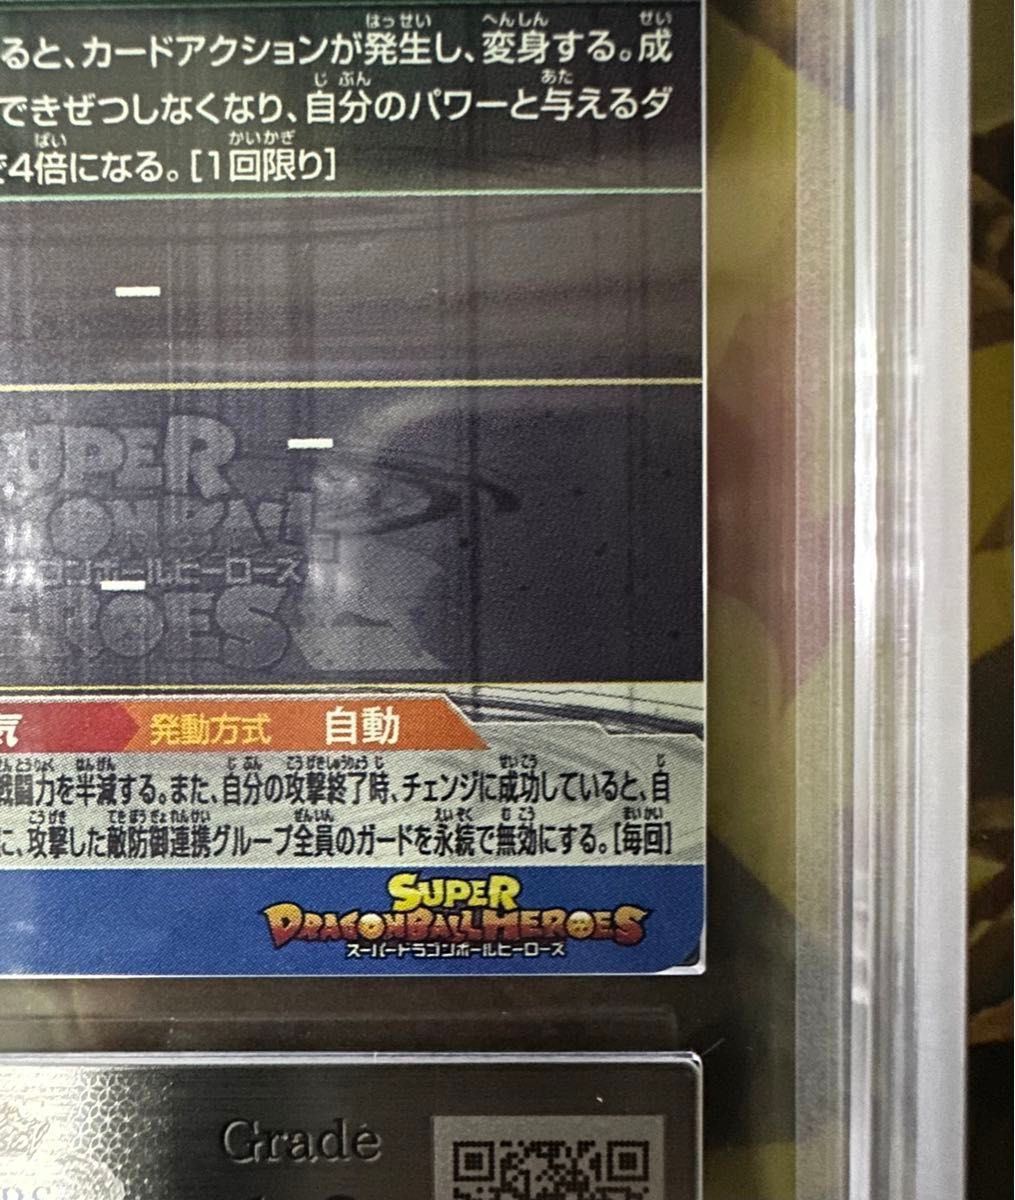 スーパードラゴンボールヒーローズ BM11-sec3 孫悟空